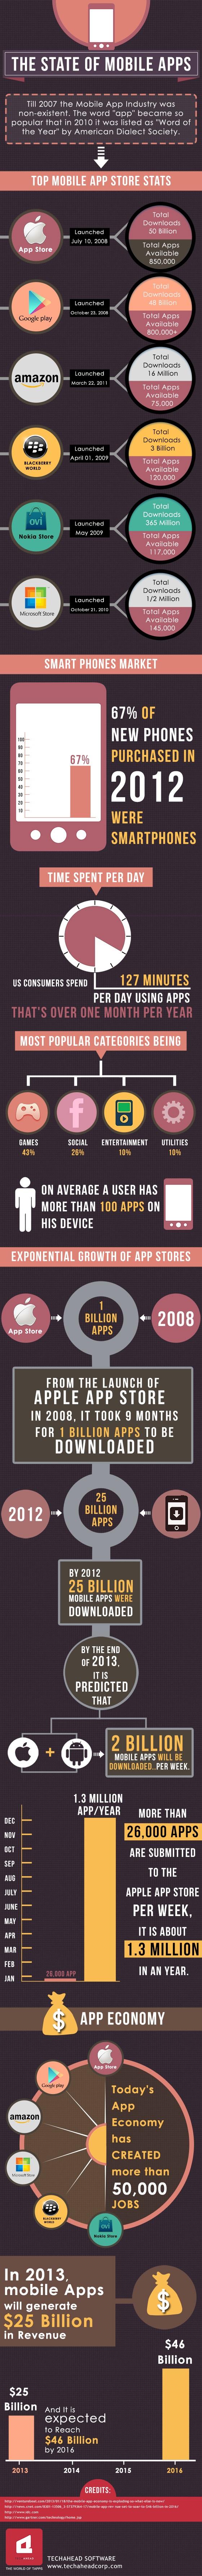 Estadísticas sobre la industria de aplicaciones móviles #Infografía #Smartphones #Móviles